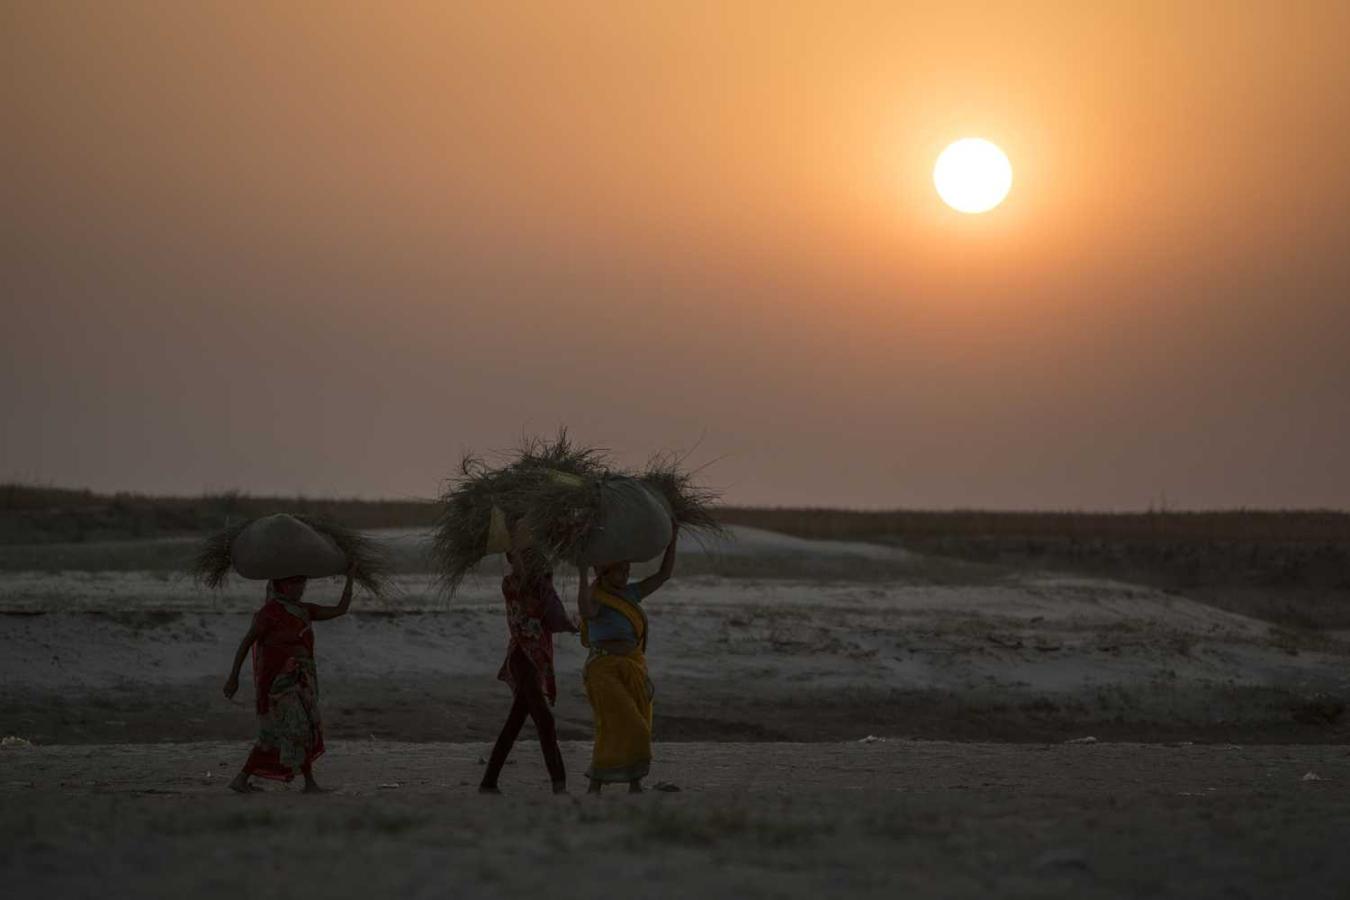 Varias mujeres indias llevando sobre sus cabezas la cosecha en Revelganjghat, India 